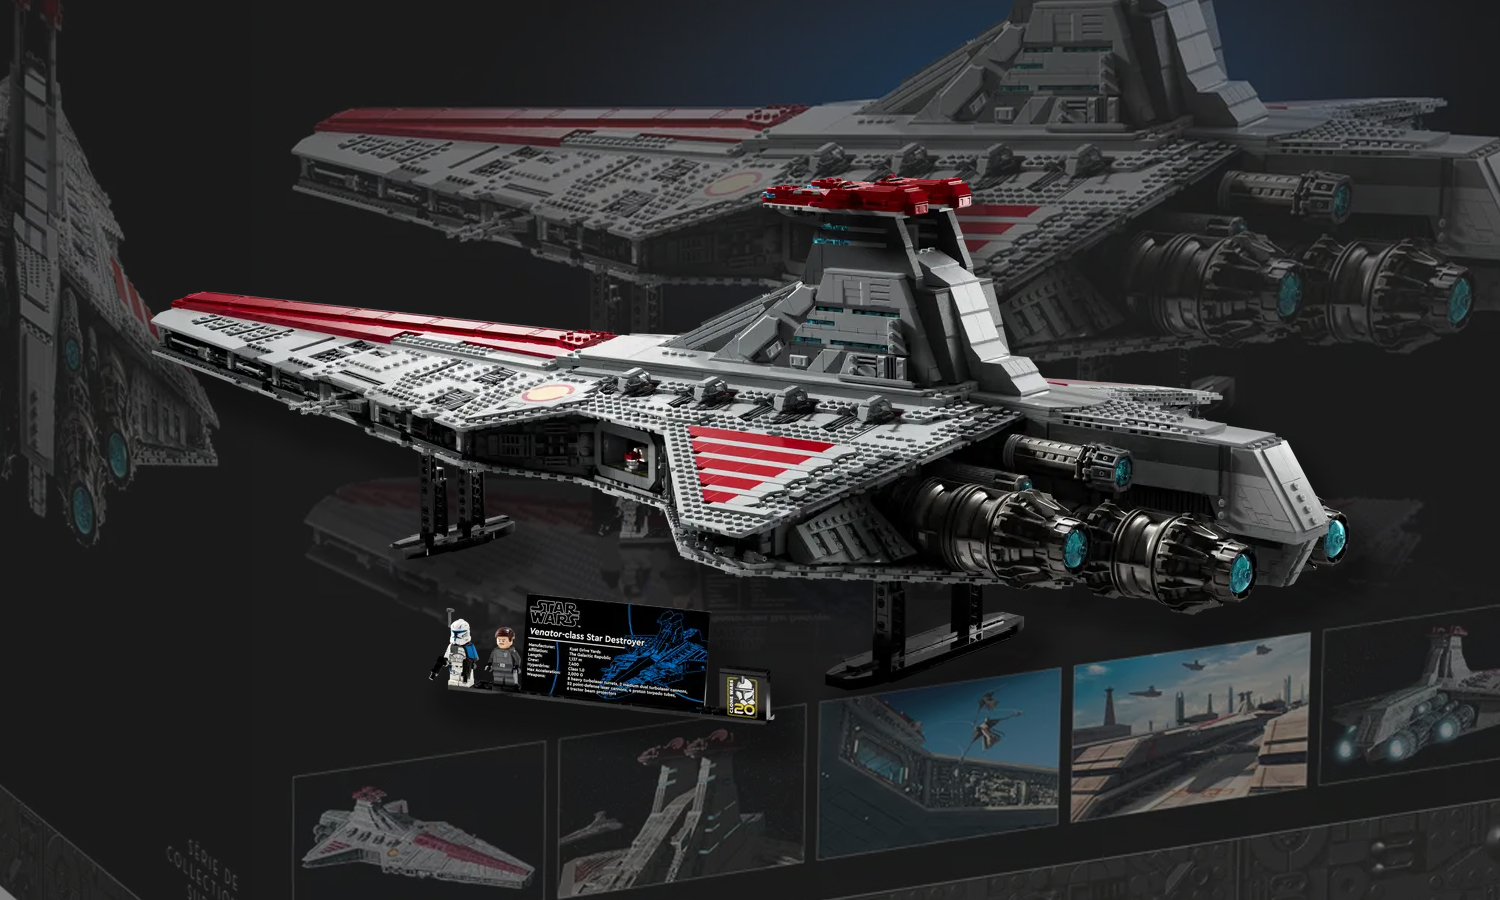 LEGO] Annonce officielle du croiseur Venator ! • Actualités Objets de  collection • Star Wars Universe